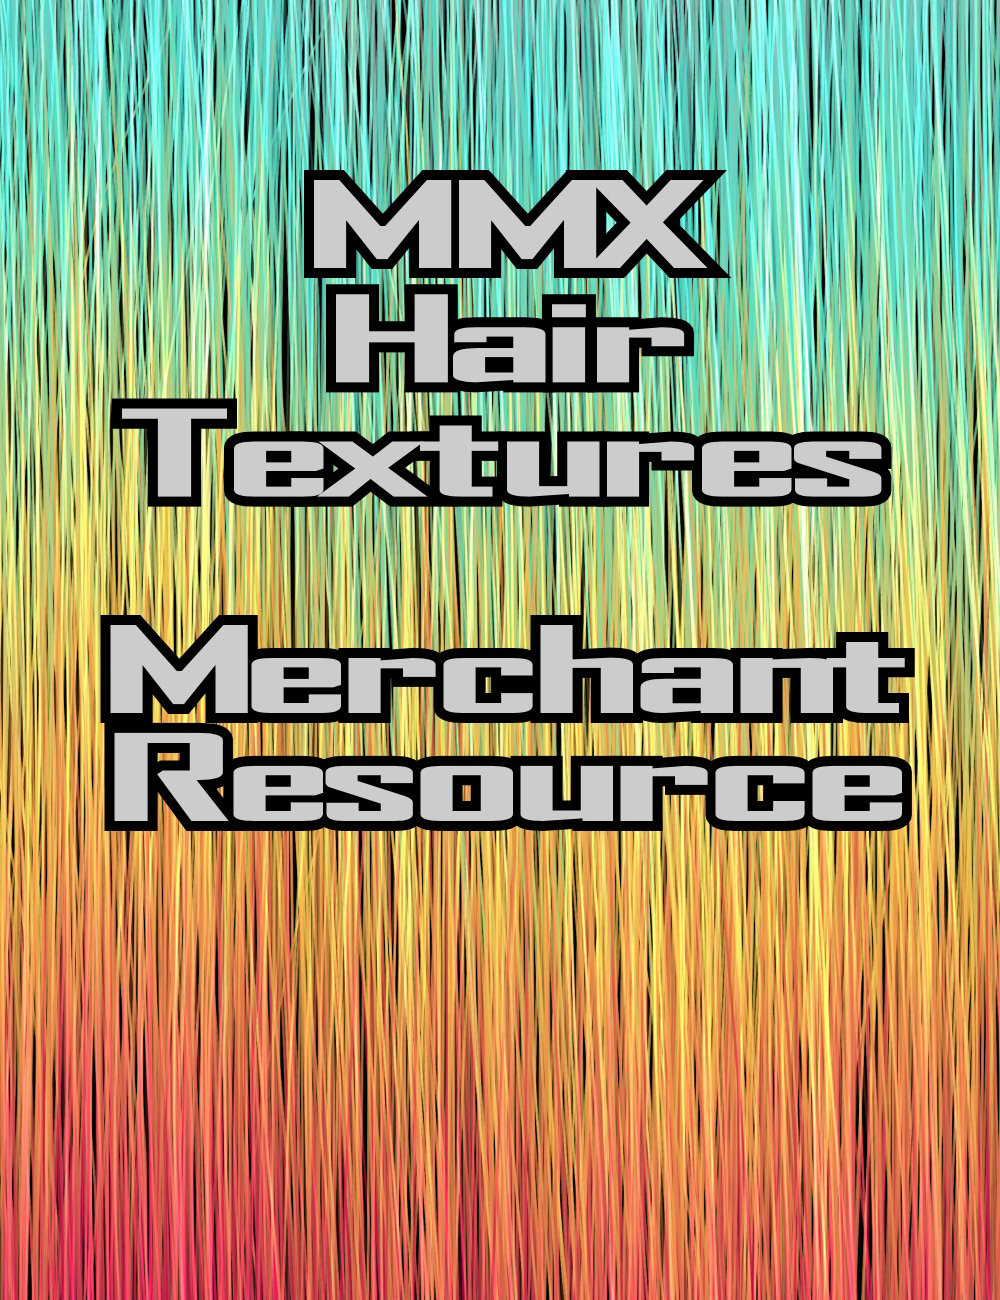 MMX Hair Textures - Merchant Resource by: Mattymanx, 3D Models by Daz 3D